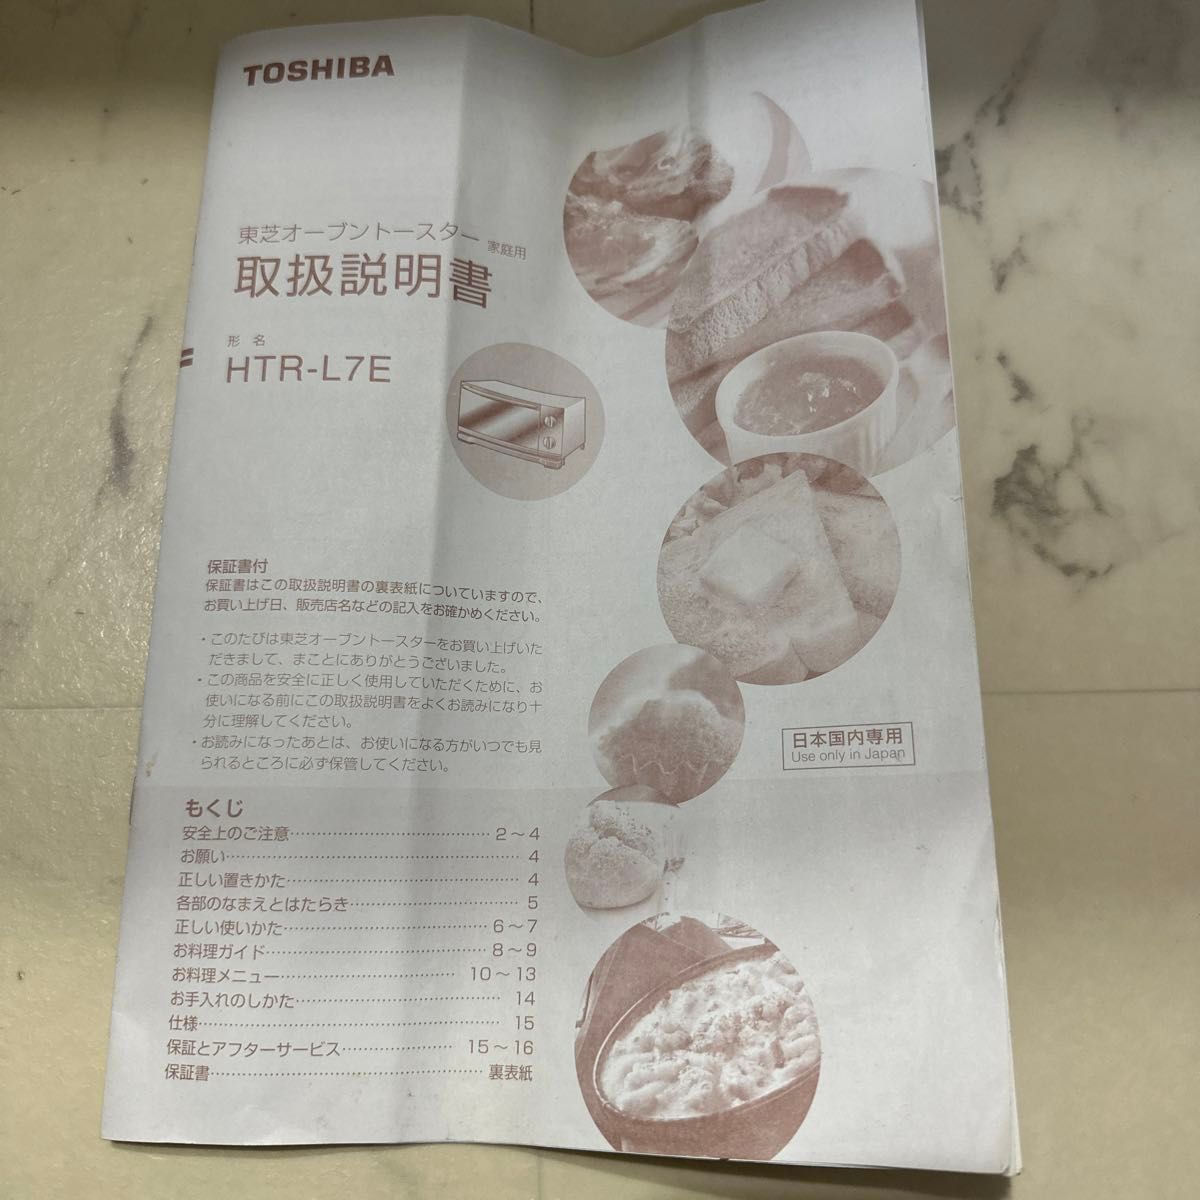 オーブントースター 東芝 TOSHIBA トースター コンベクションオーブントースター HTR-L7ブラック 動作確認済